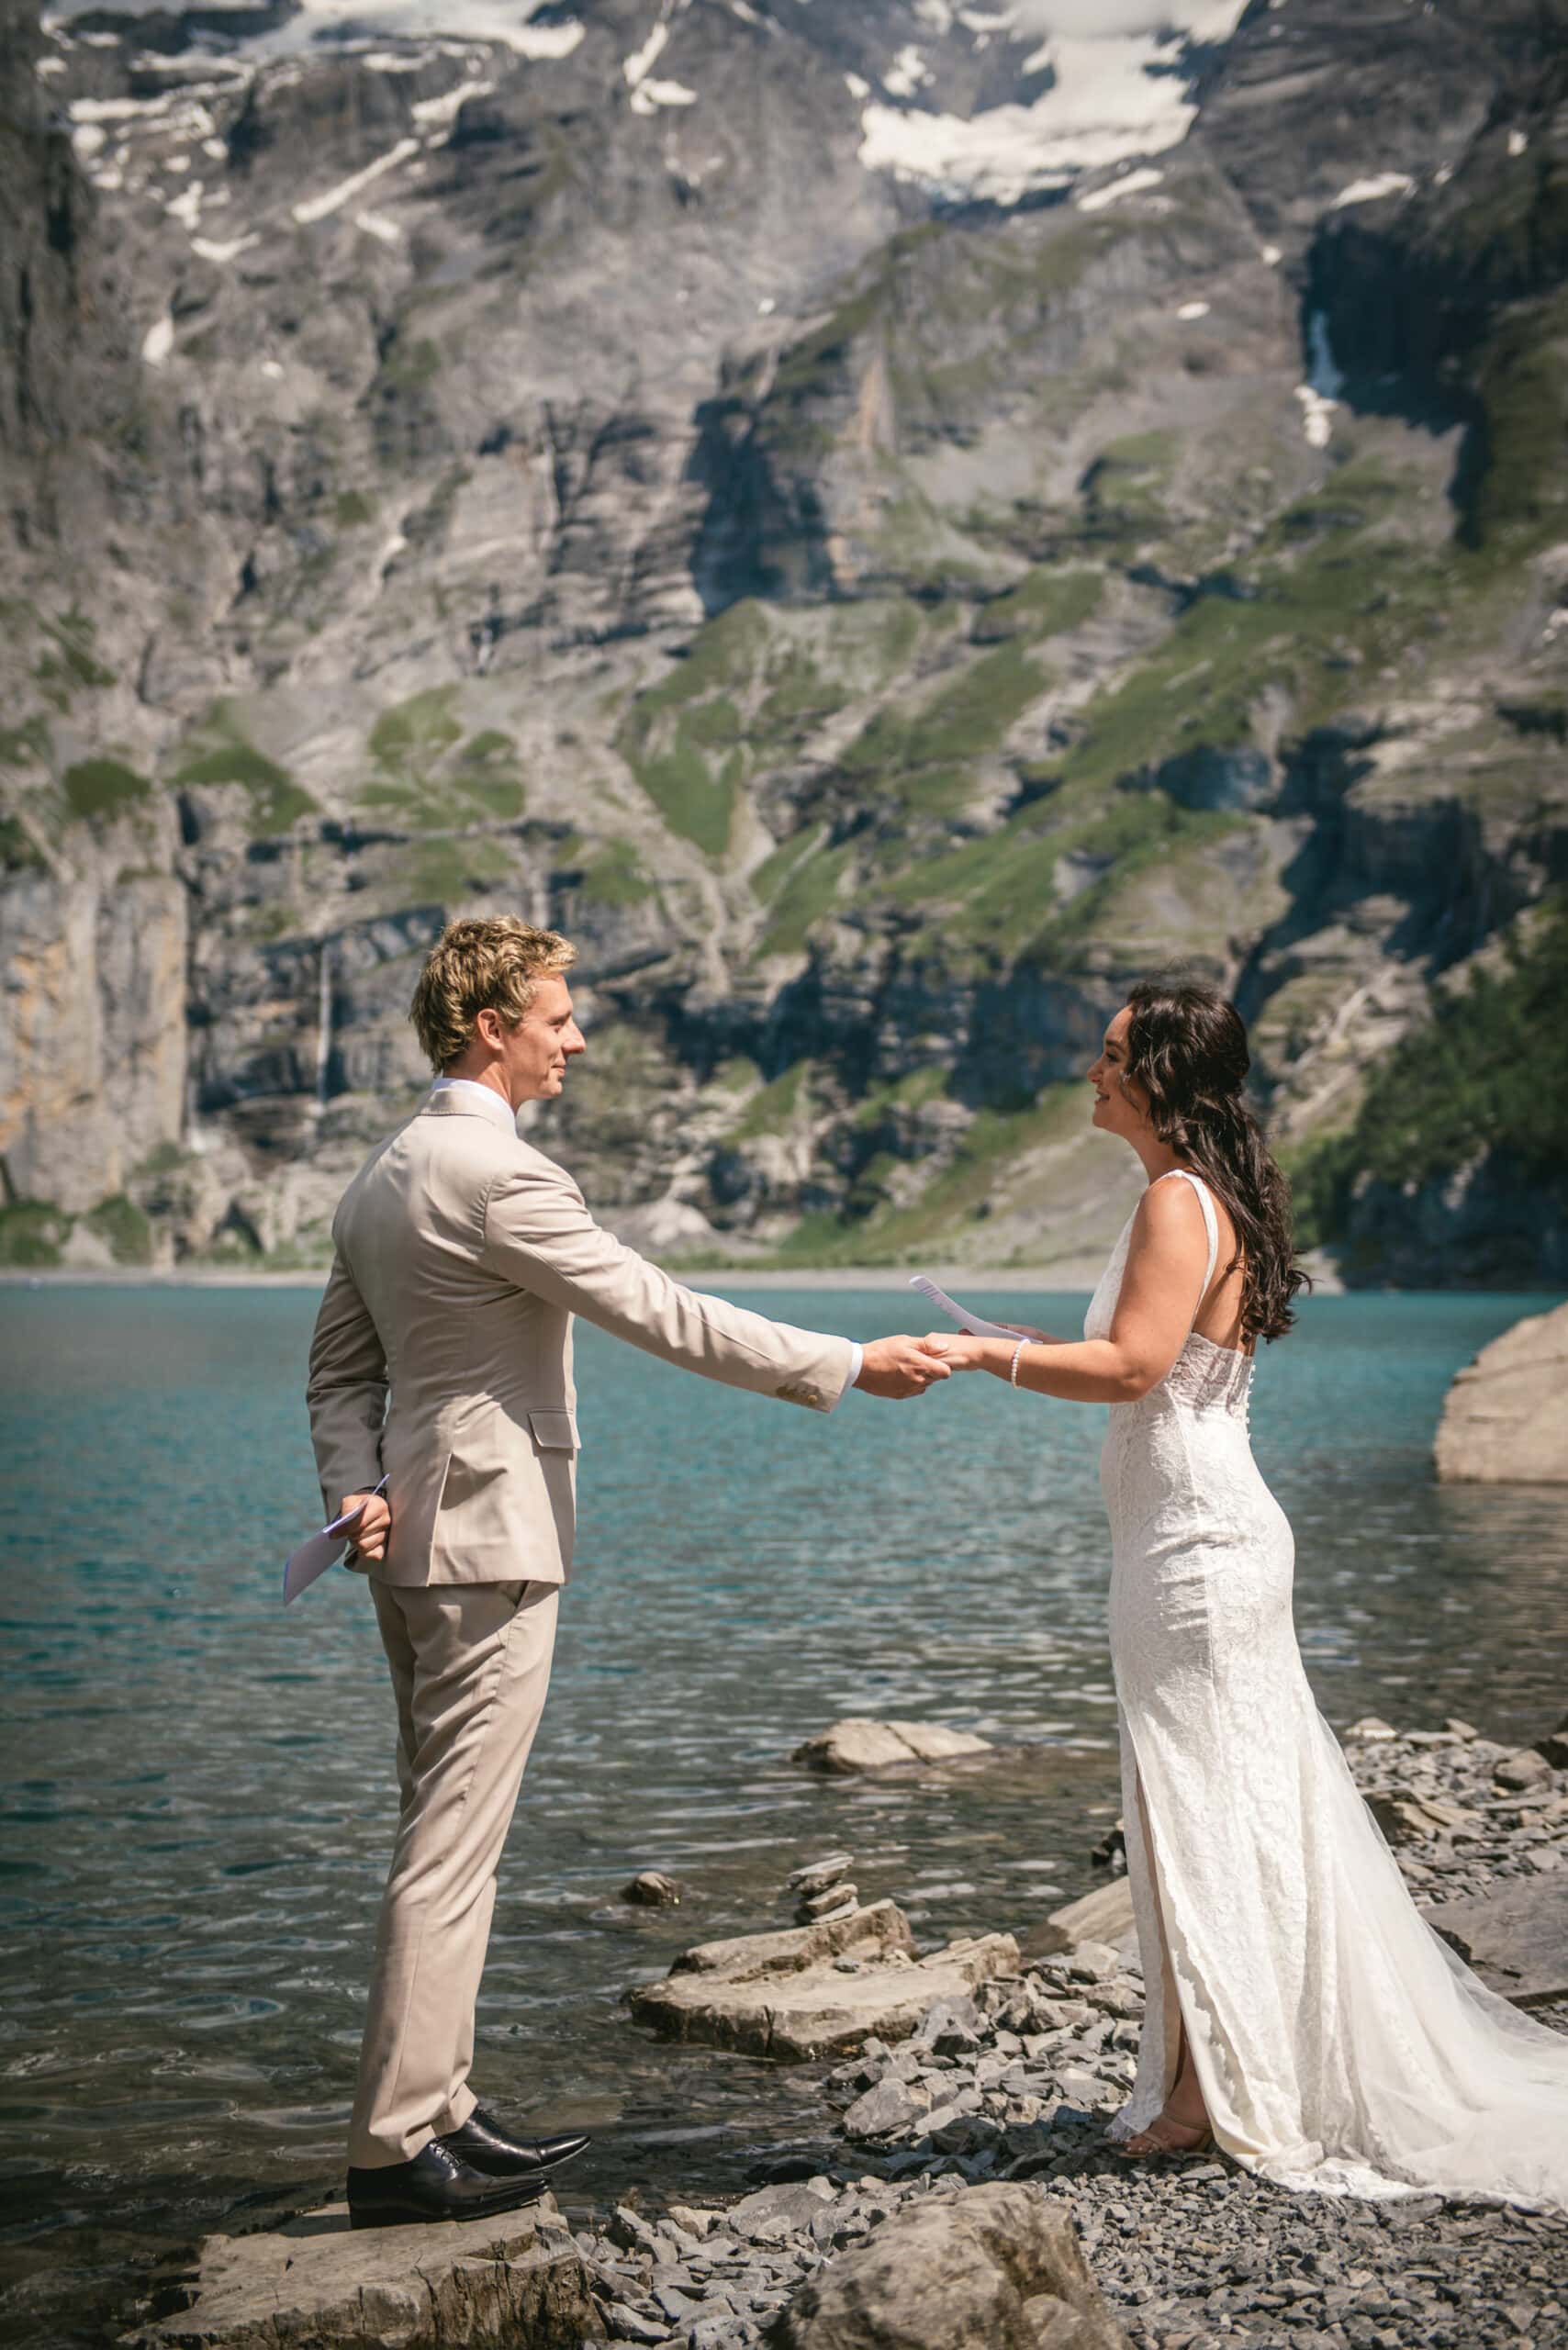 Love's journey set against Swiss vistas - Emily & Luke's hiking elopement.